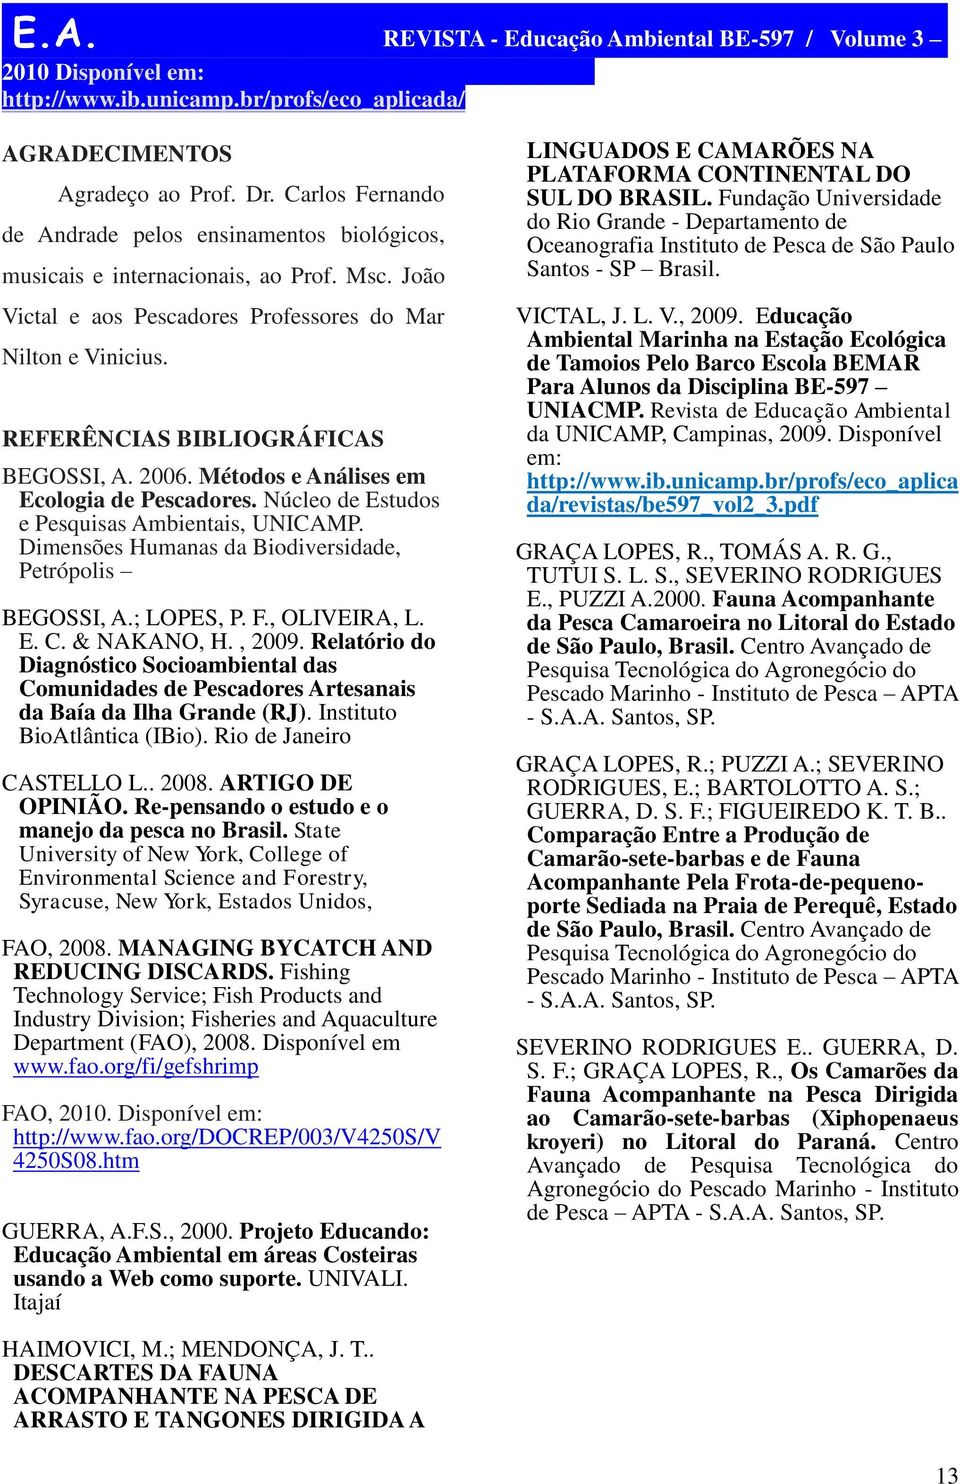 Núcleo de Estudos e Pesquisas Ambientais, UNICAMP. Dimensões Humanas da Biodiversidade, Petrópolis BEGOSSI, A.; LOPES, P. F., OLIVEIRA, L. E. C. & NAKANO, H., 2009.